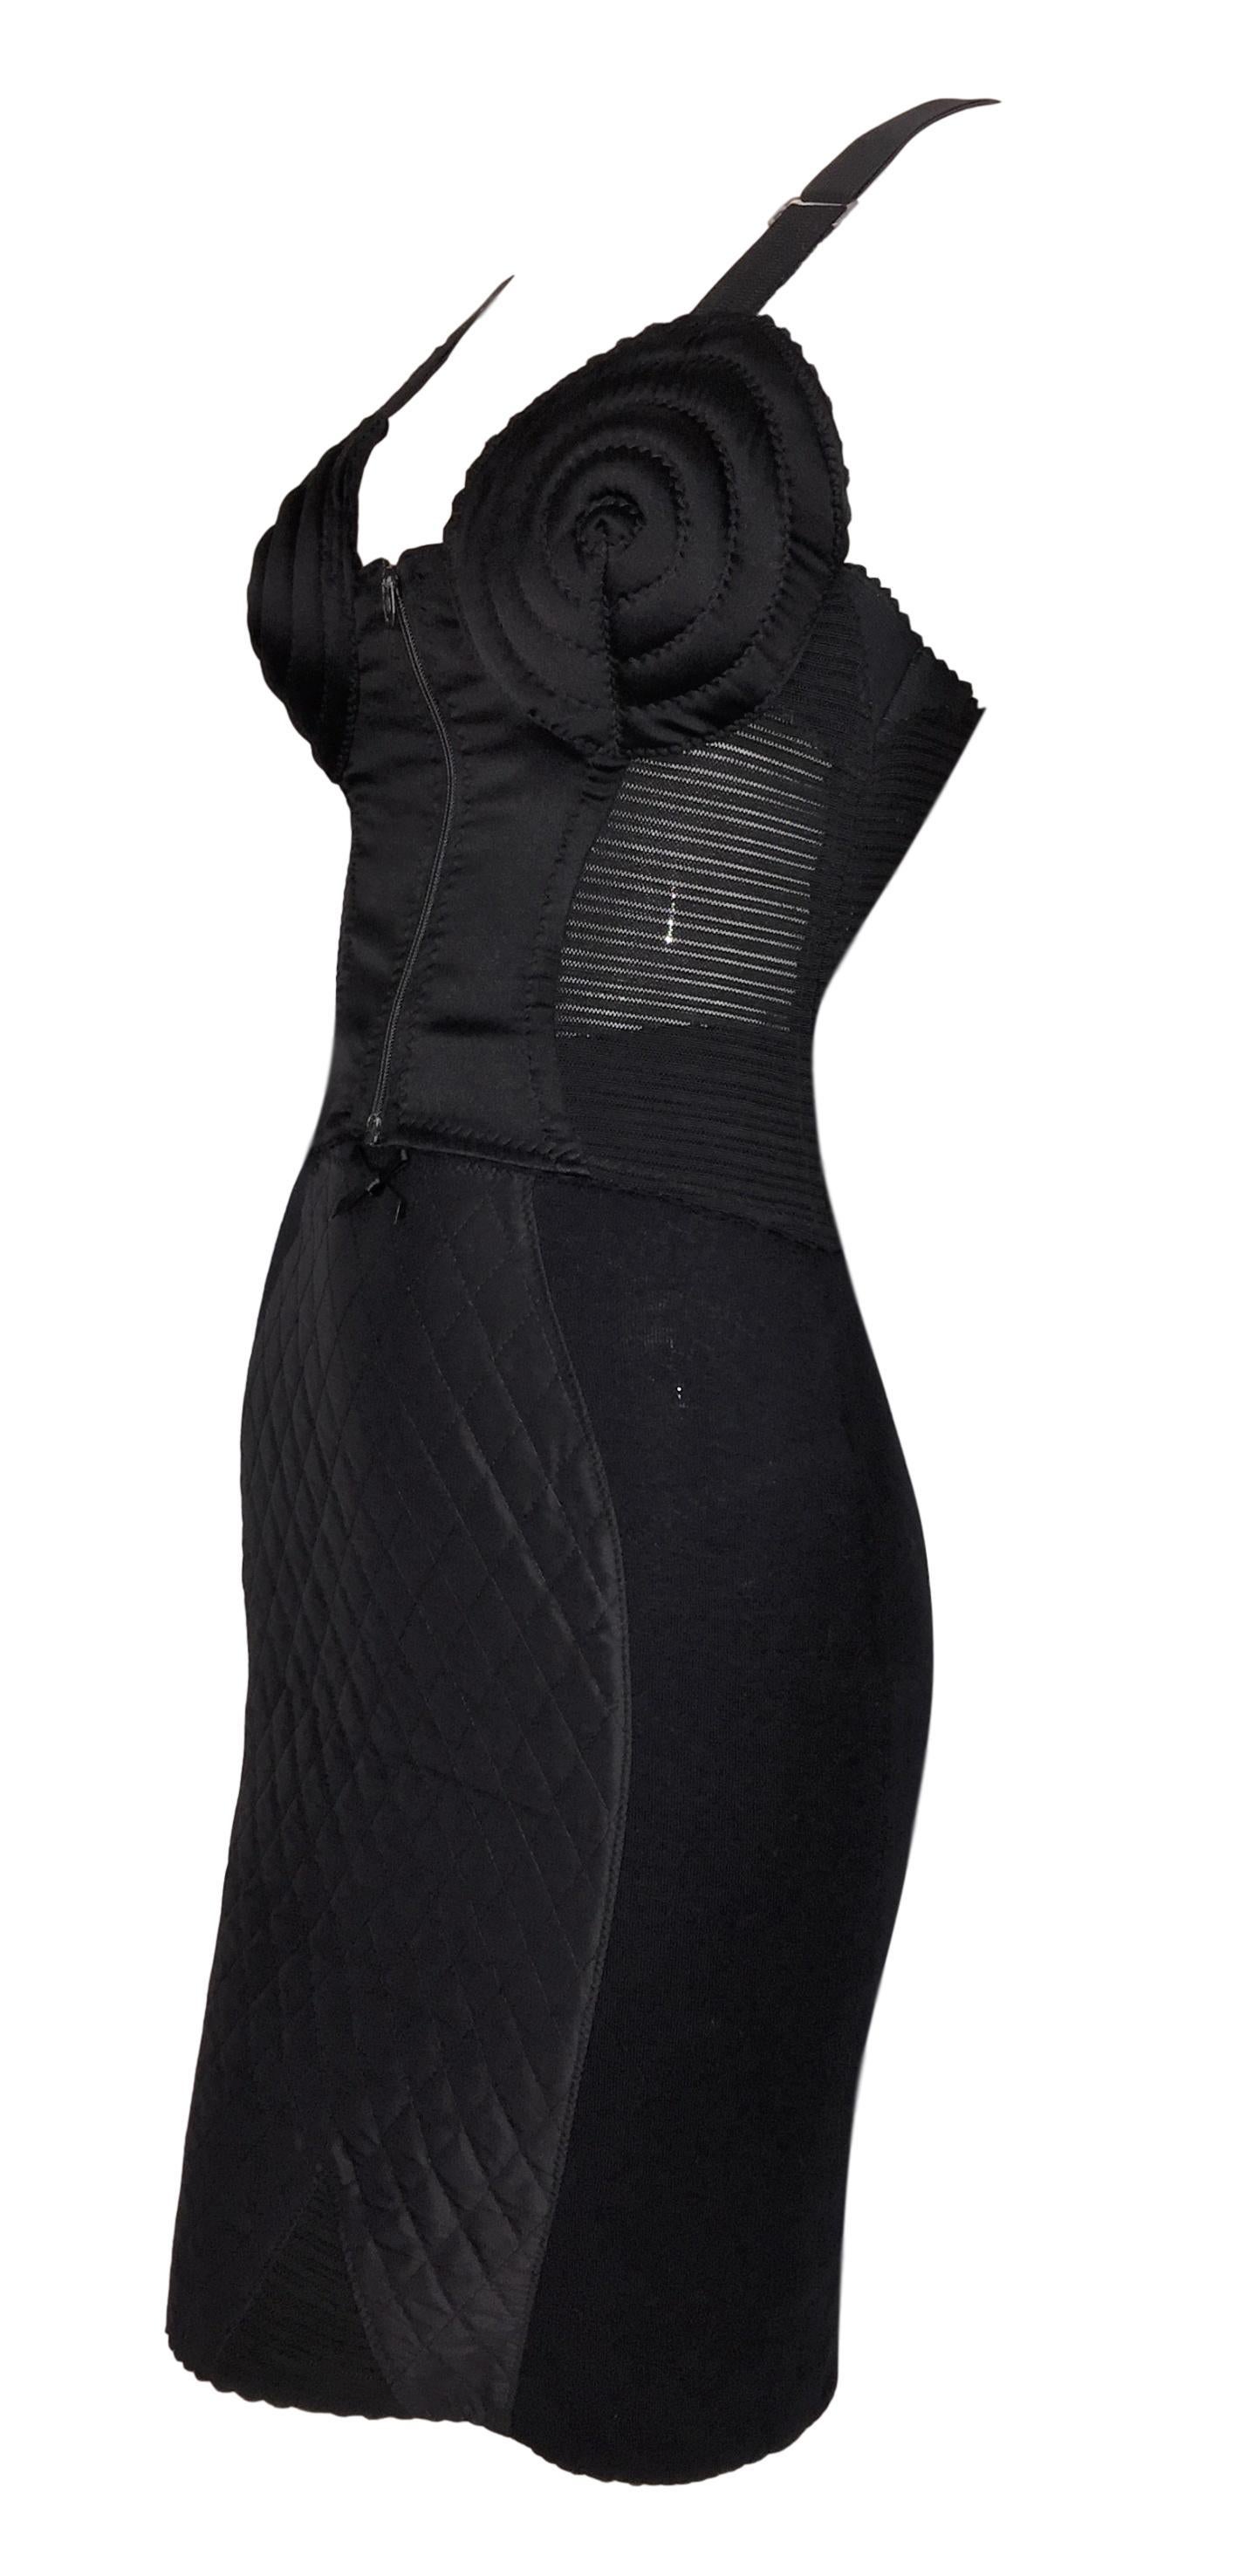 Noir 1987 Jean Paul Gaultier Black Cone Bra Bustier Crop Top & Corset Skirt Set